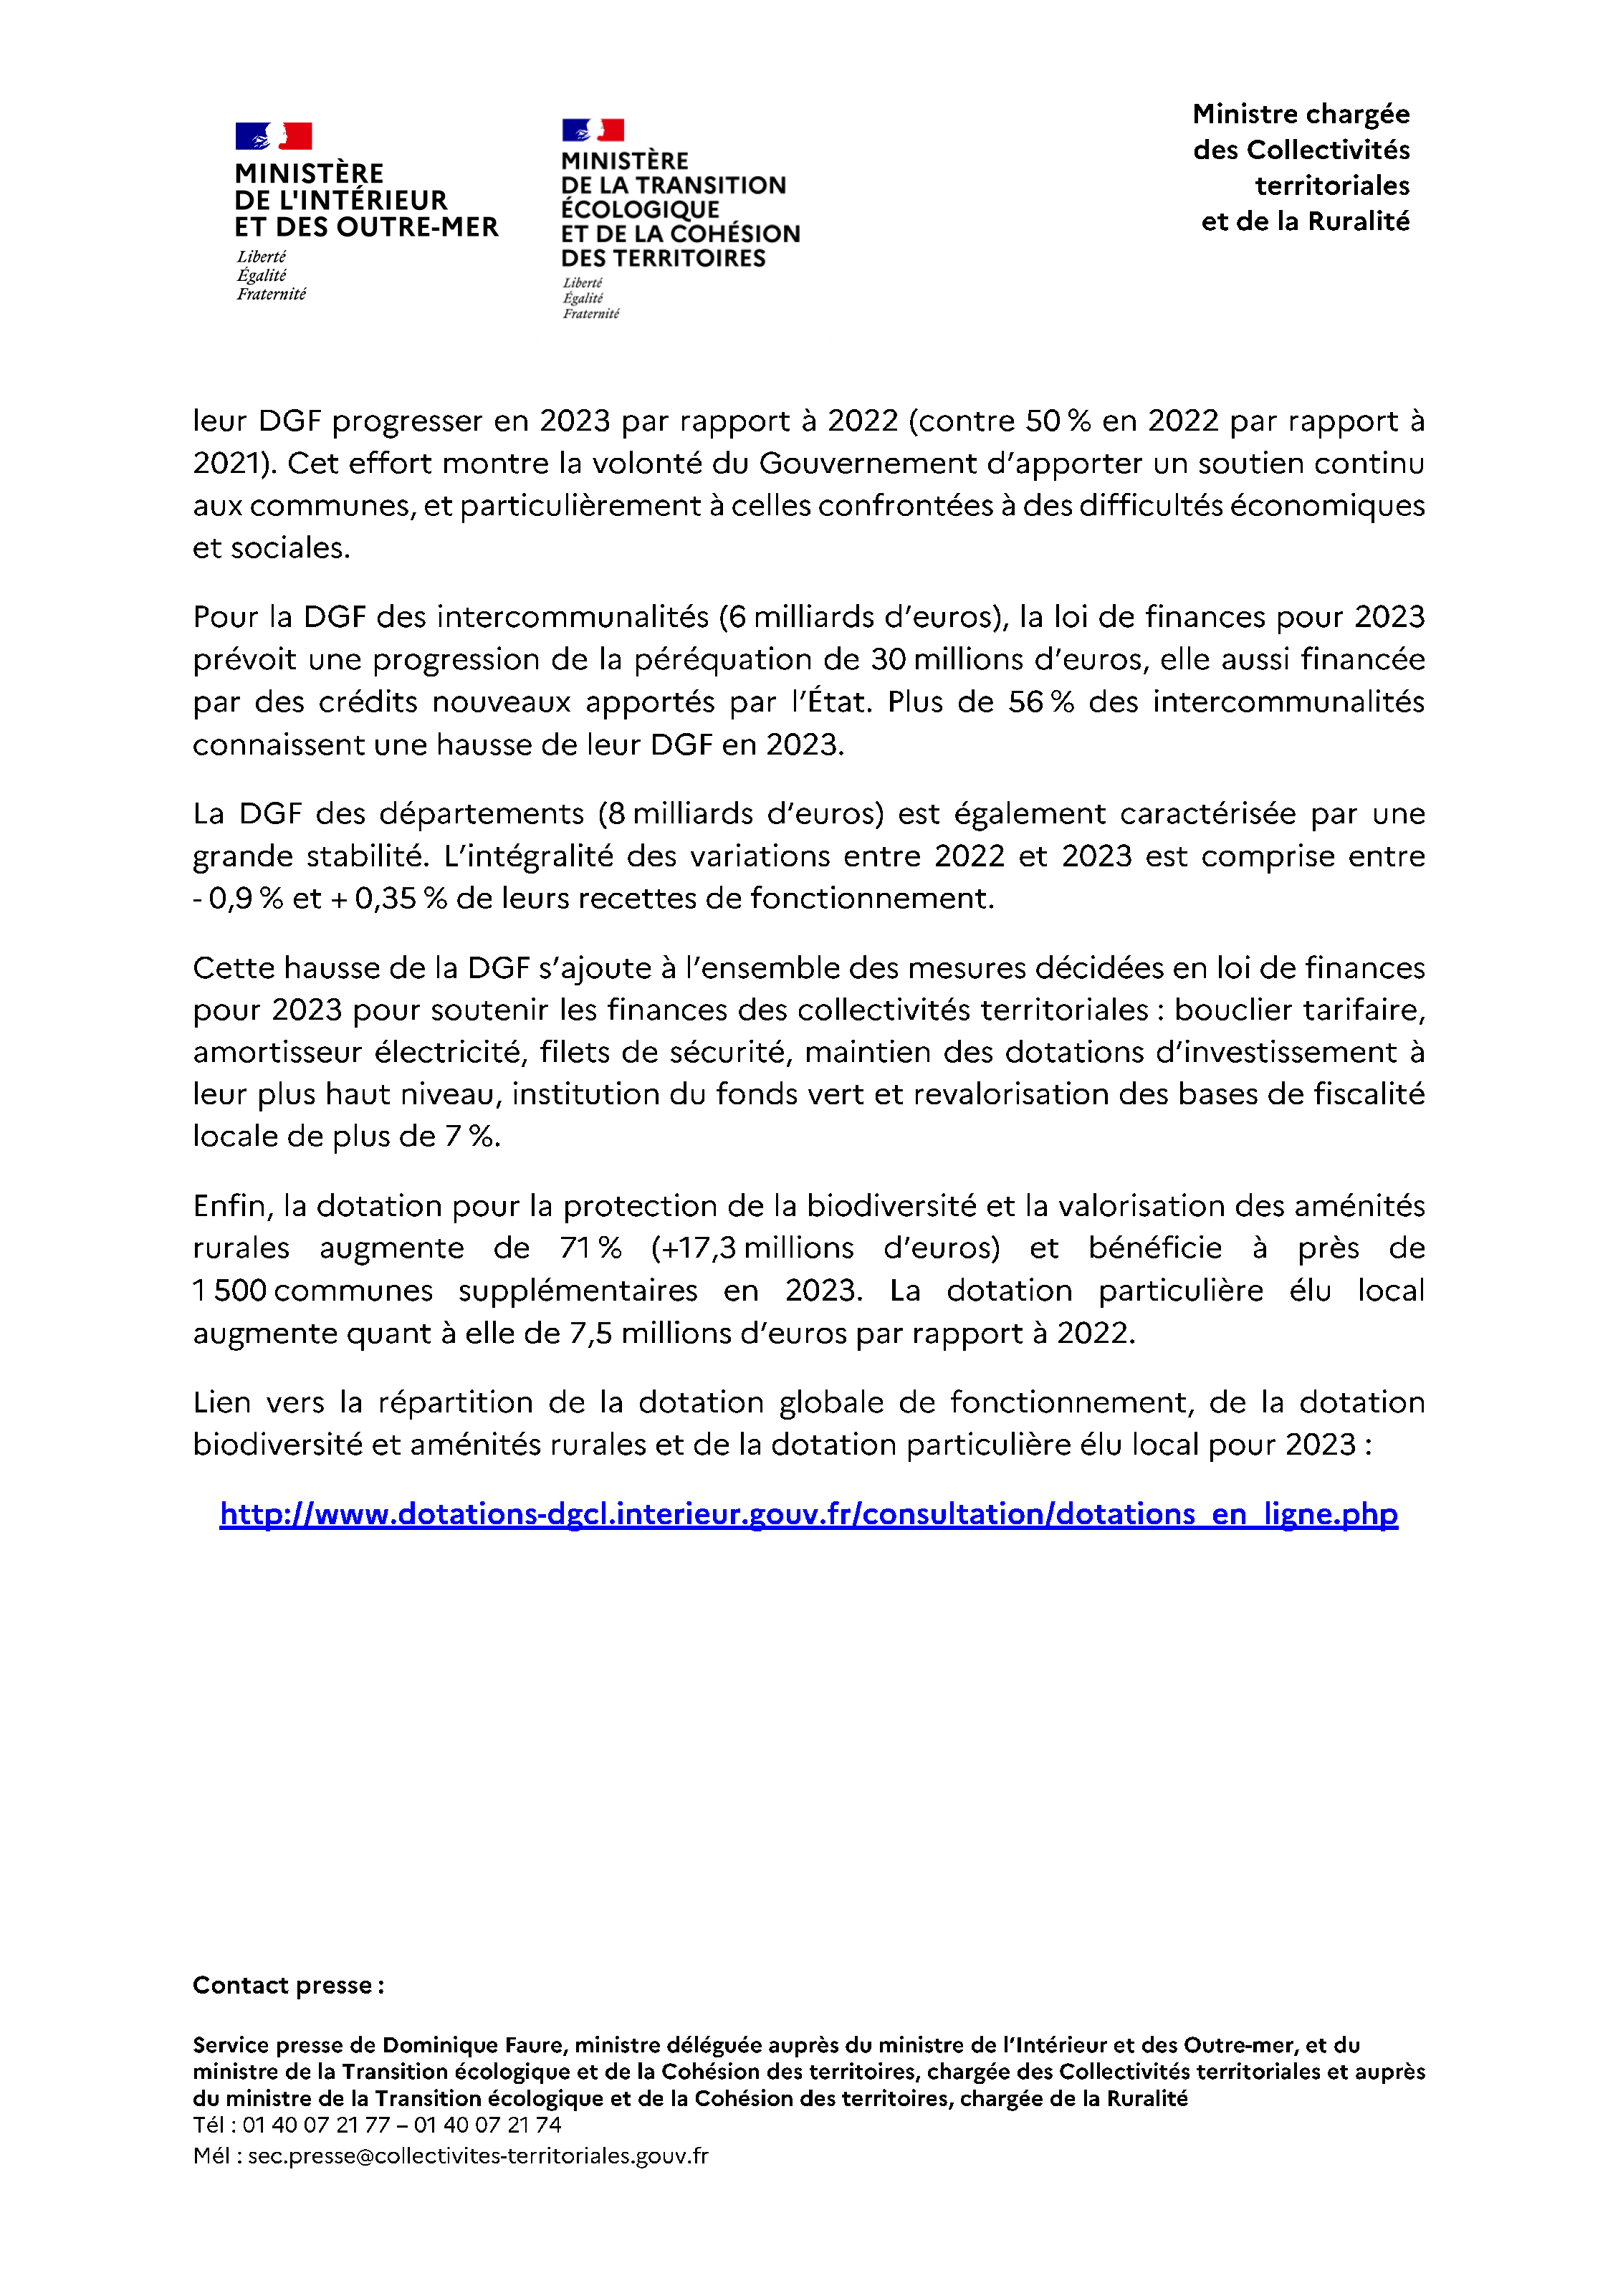 CP Repartition de la dotation globale de fonctionnement DGF pour 2023 [1][3]_Page_2